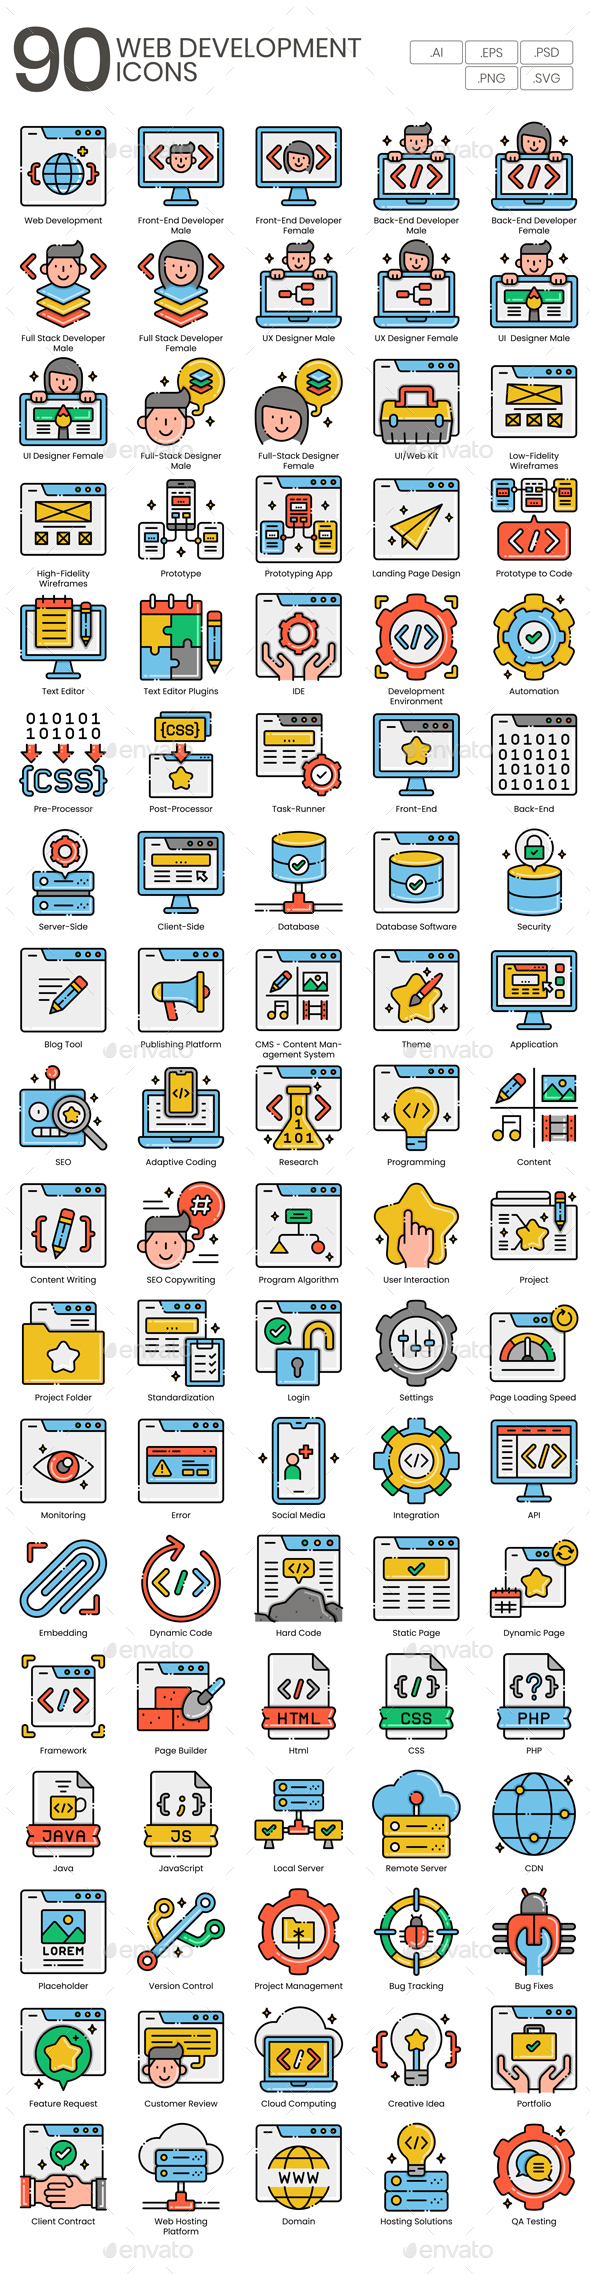 90 Web Development Icons - Aesthetics Series